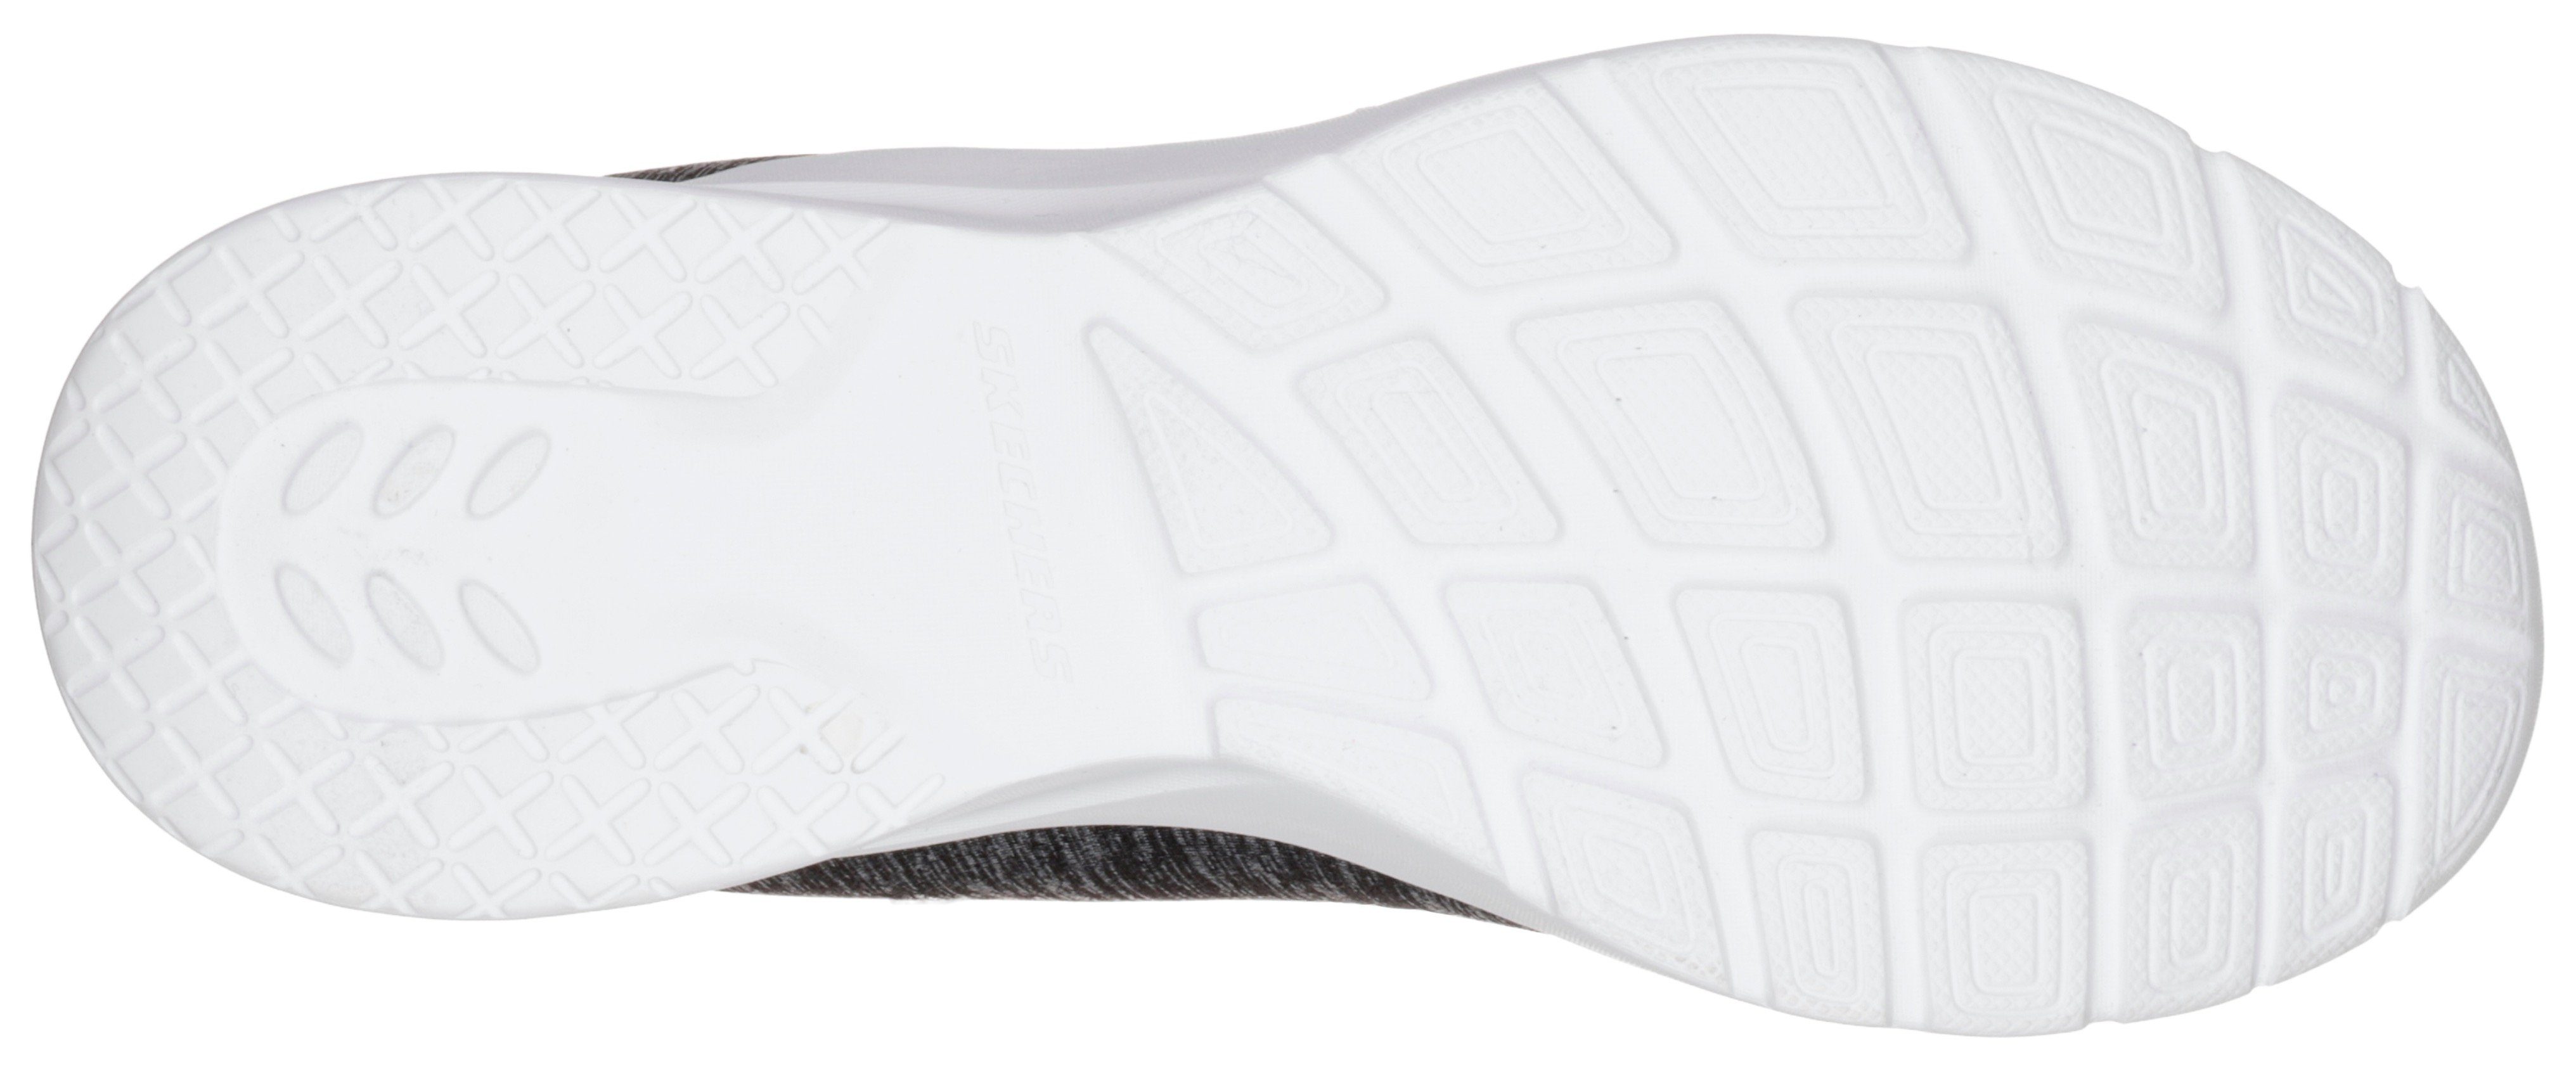 Skechers DYNAMIGHT 2.0-IN A Slip-On für FLASH Maschinenwäsche schwarz-pink geeignet Sneaker